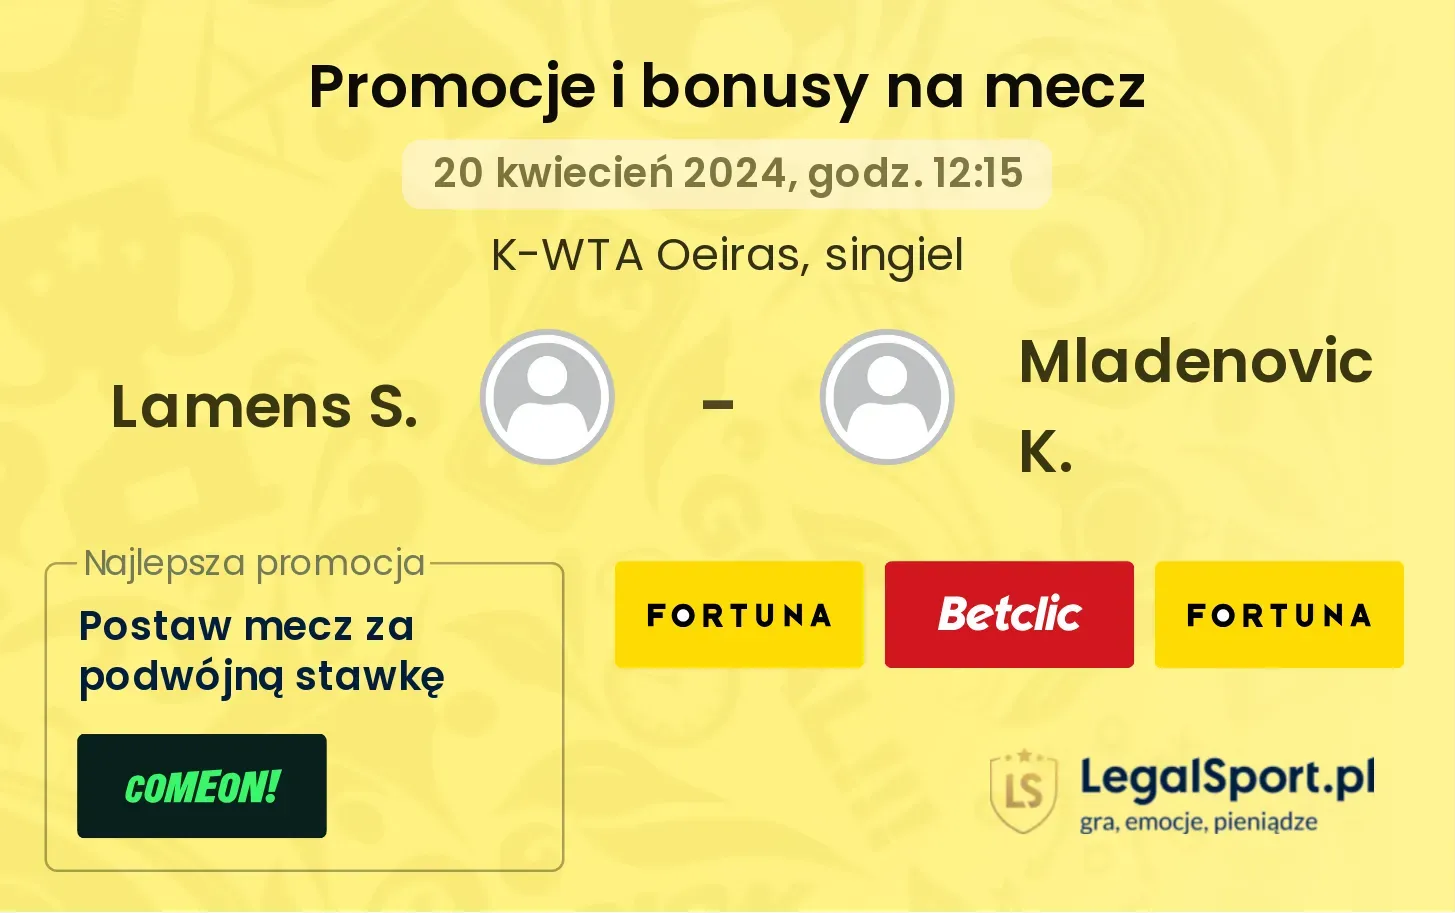 Lamens S. - Mladenovic K. promocje bonusy na mecz